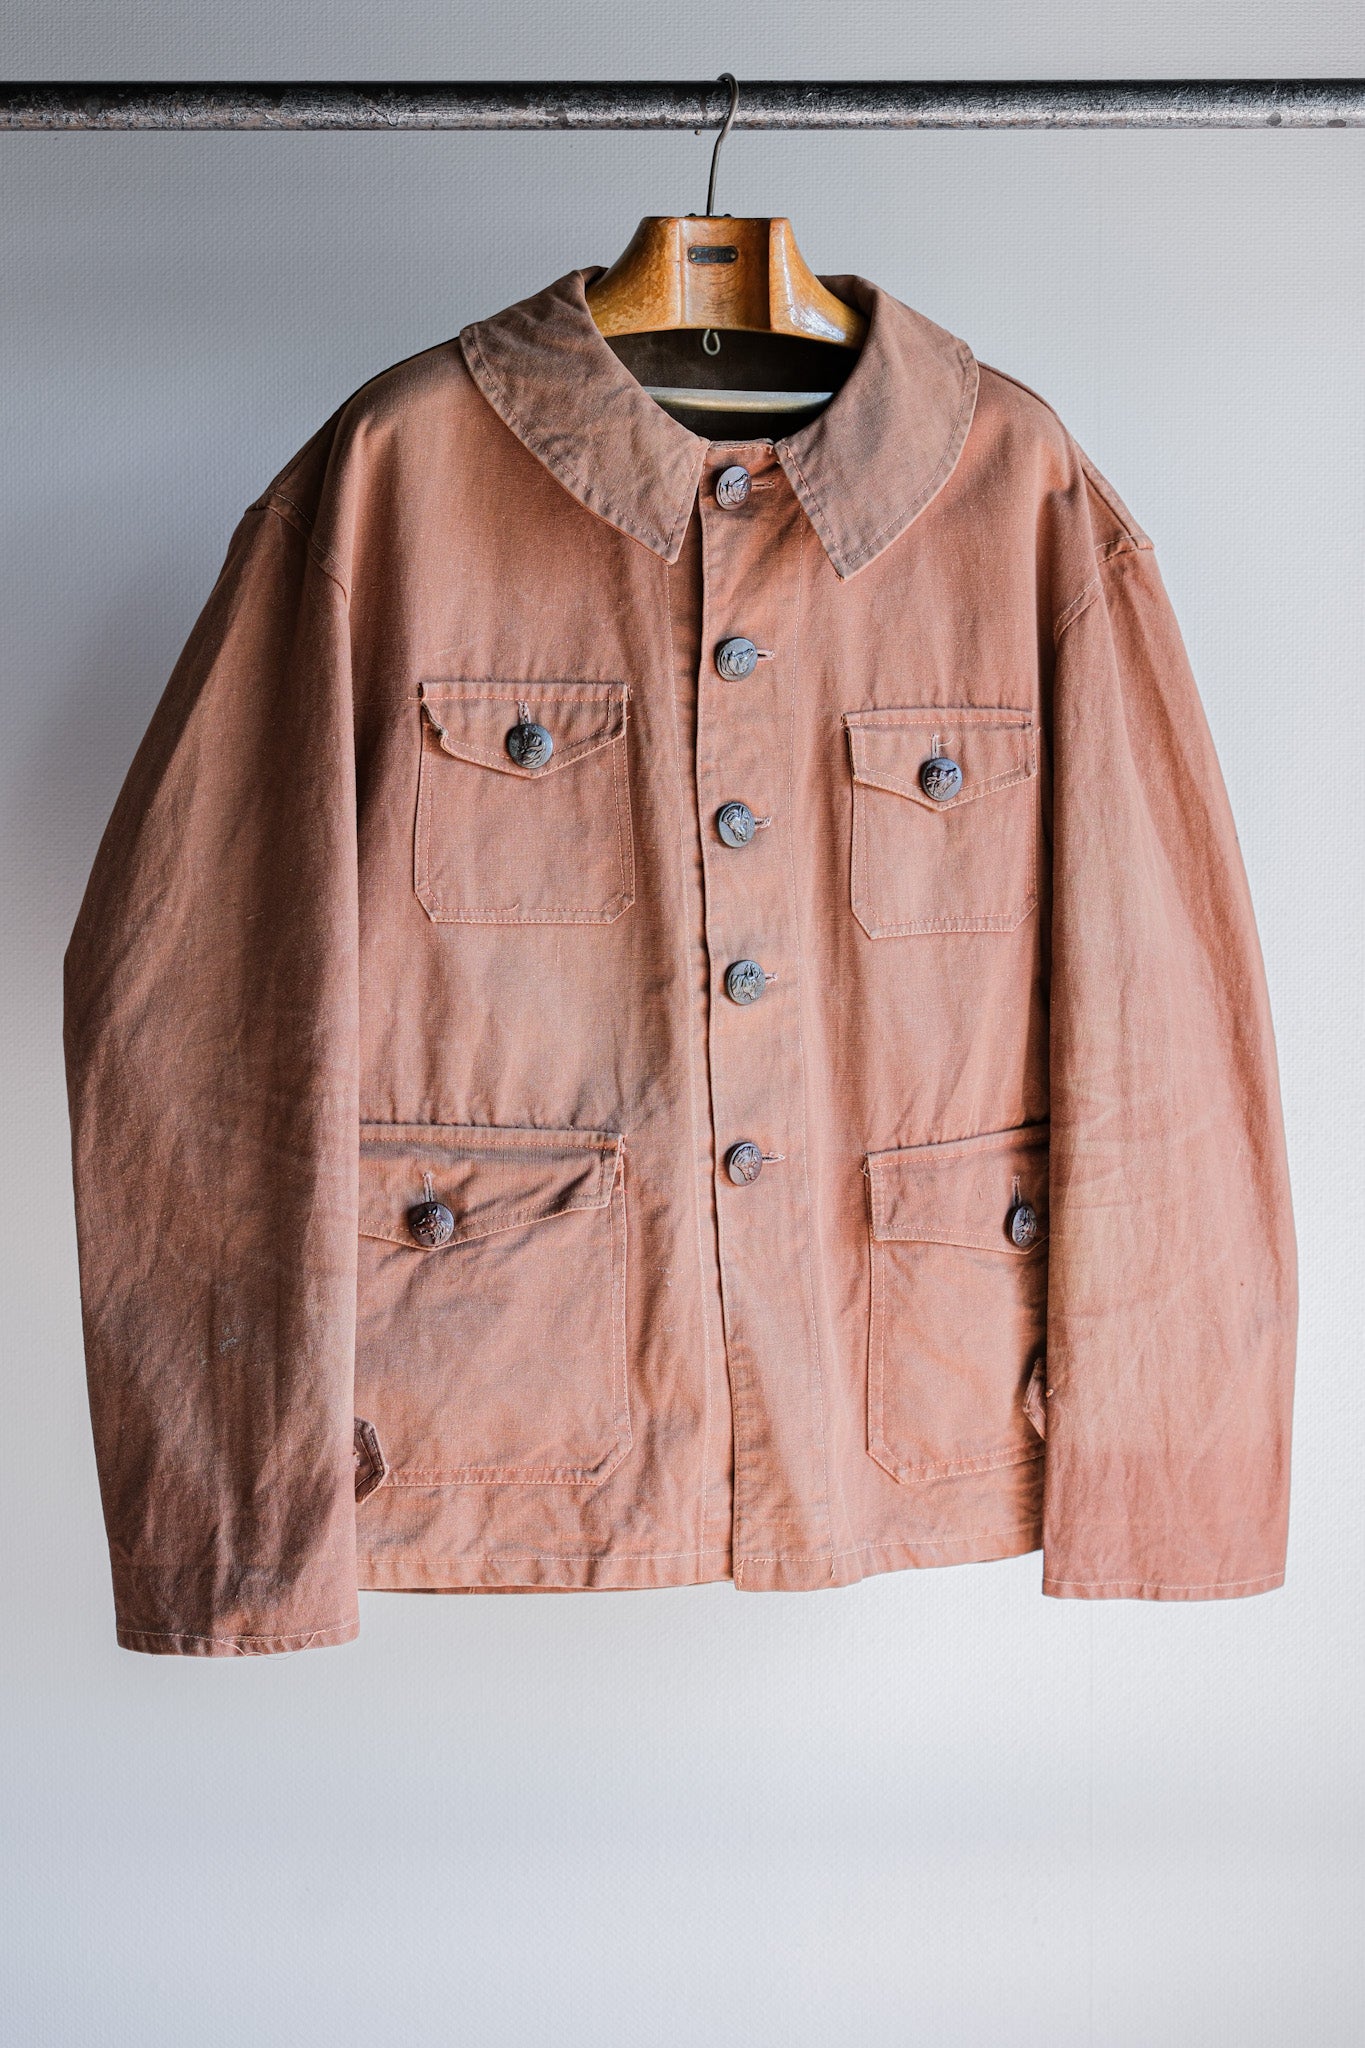 [〜40年代]法國復古紅棕色棉帆布狩獵夾克